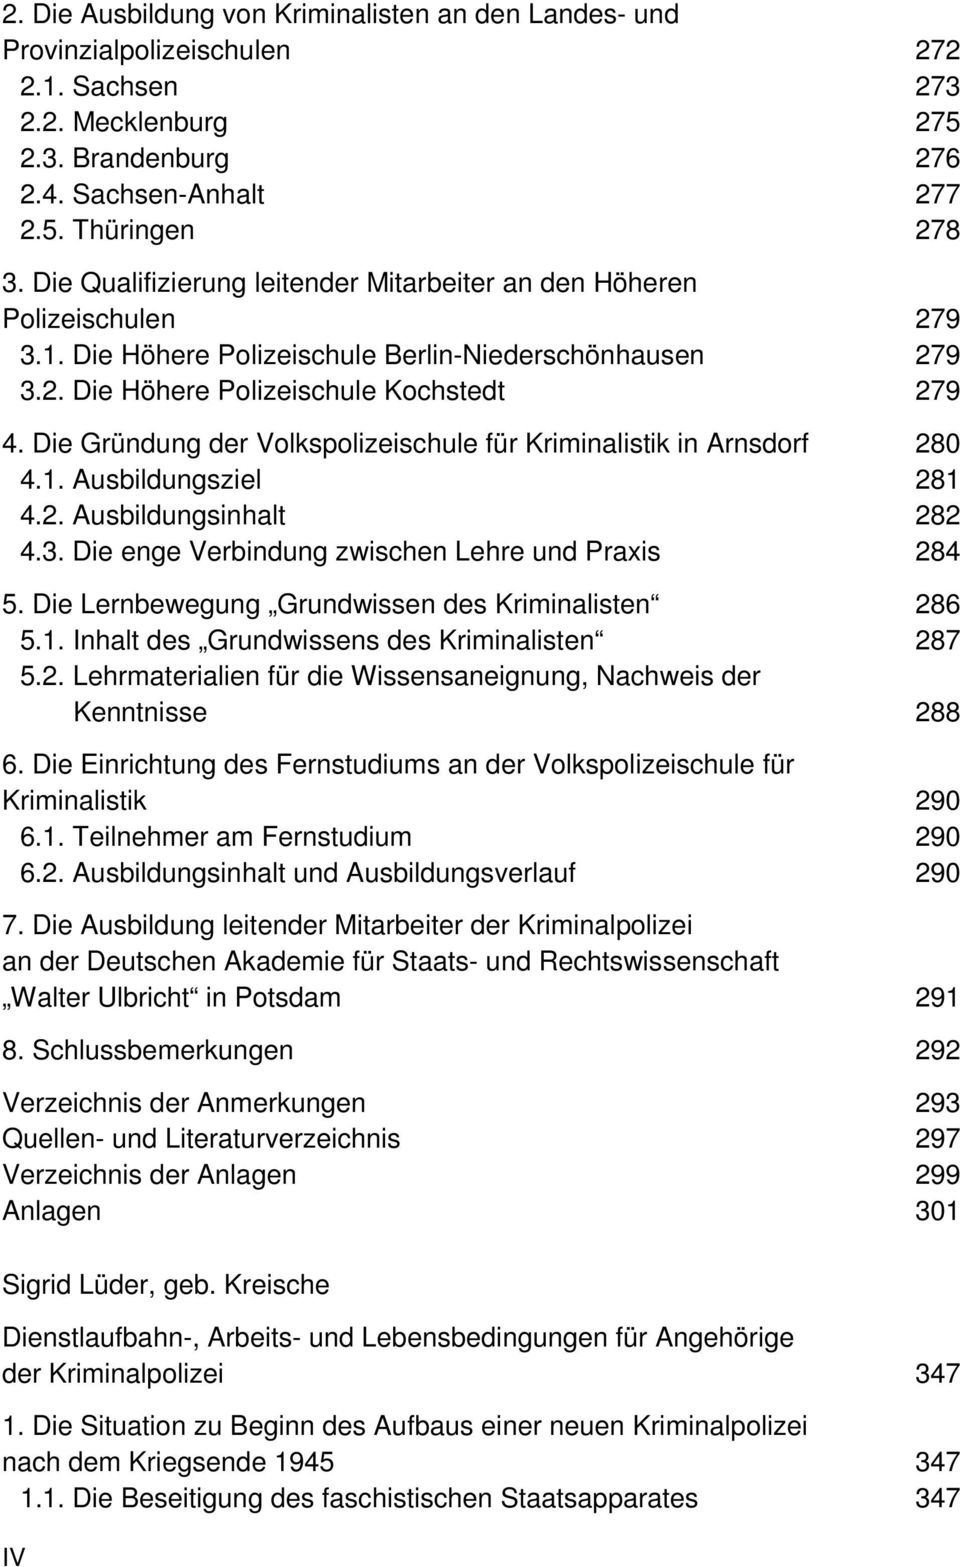 Die Gründung der Volkspolizeischule für Kriminalistik in Arnsdorf 280 4.1. Ausbildungsziel 281 4.2. Ausbildungsinhalt 282 4.3. Die enge Verbindung zwischen Lehre und Praxis 284 5.